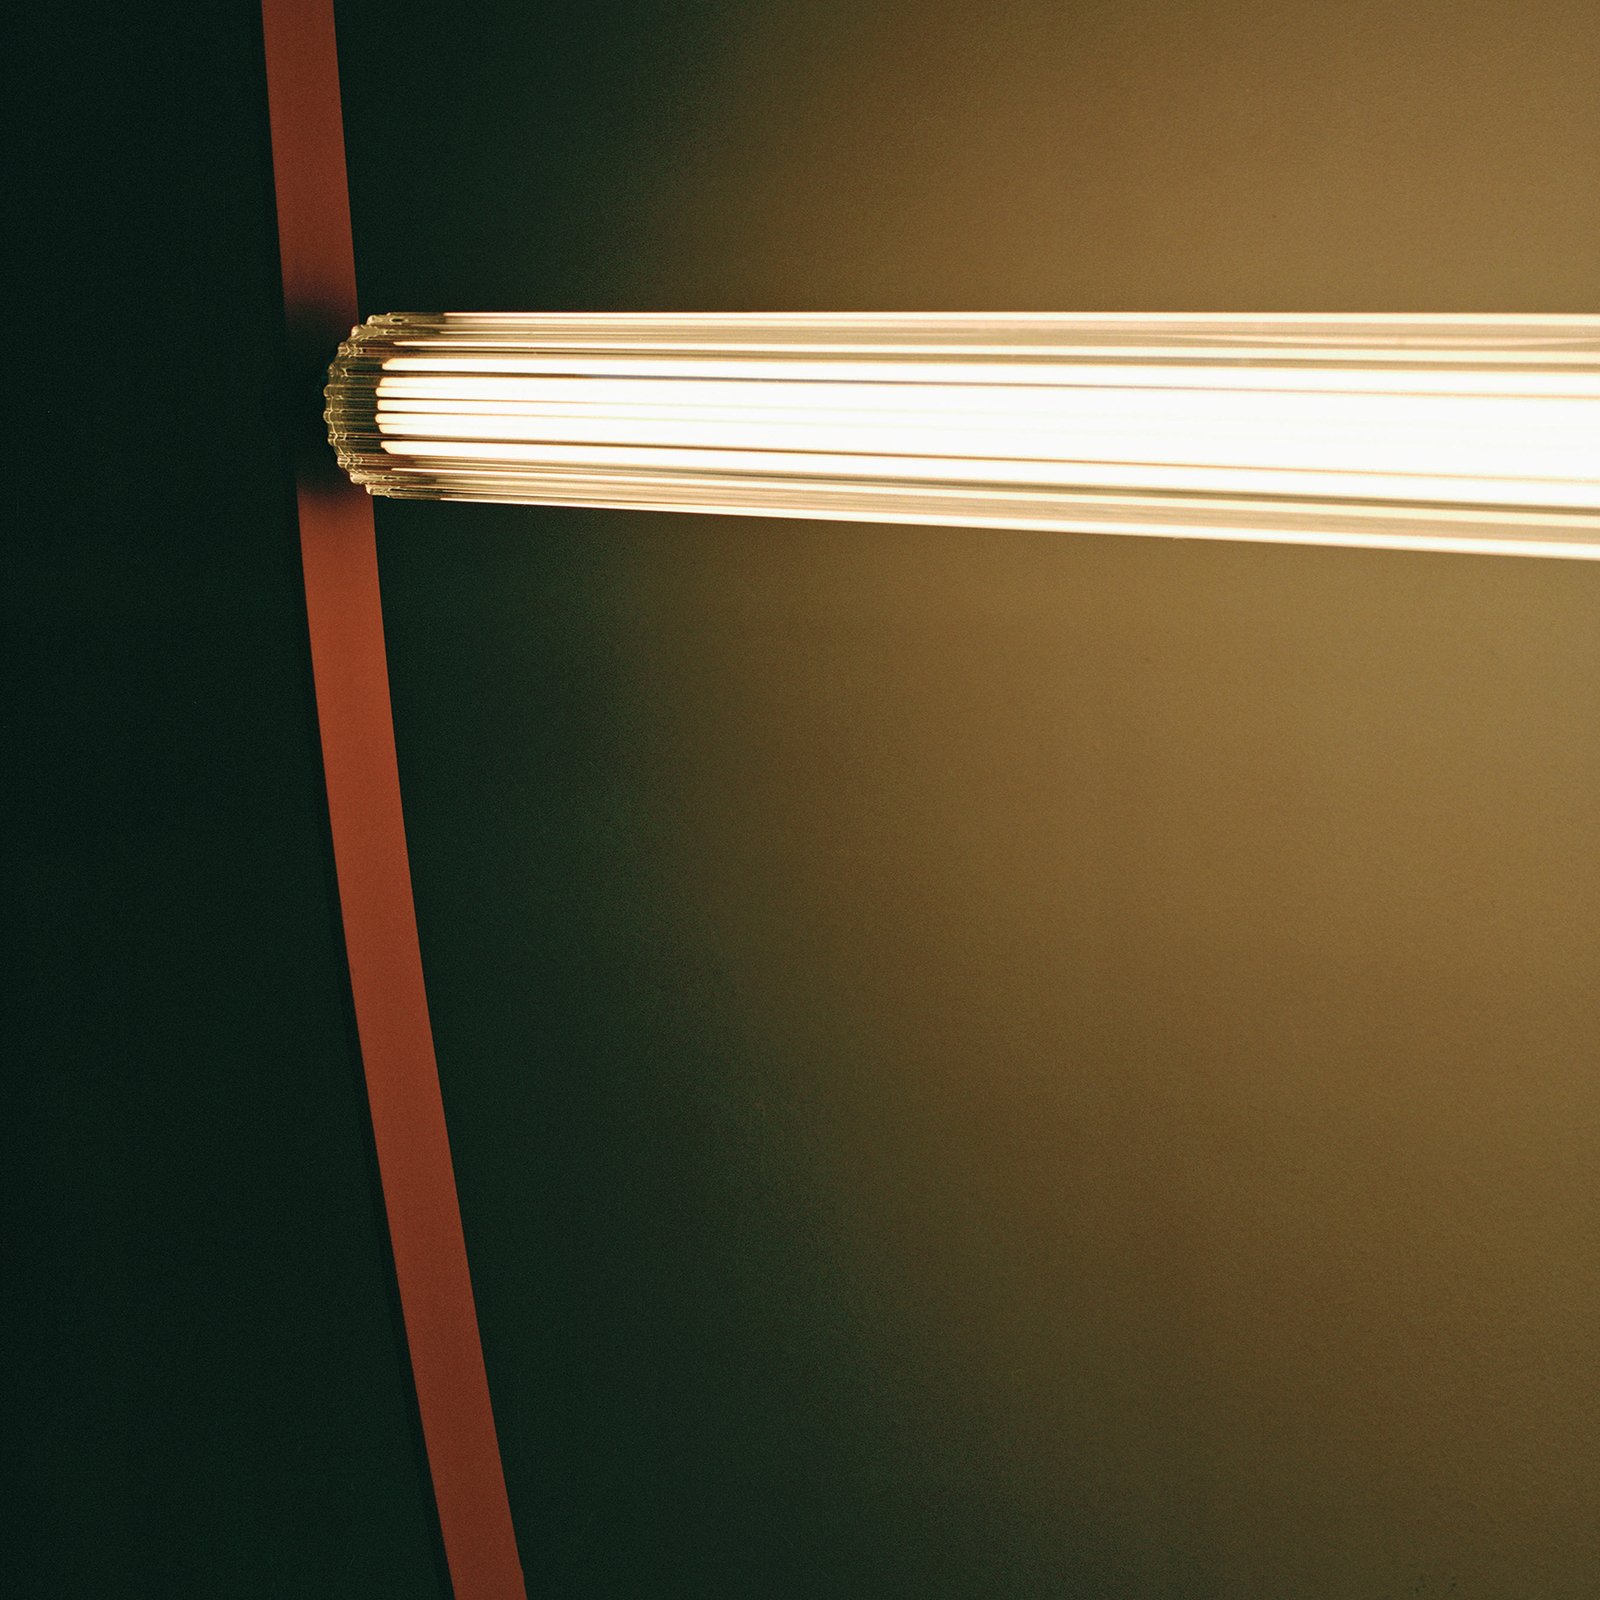 Luminária suspensa LED FLOS Wireline com regulador de intensidade,